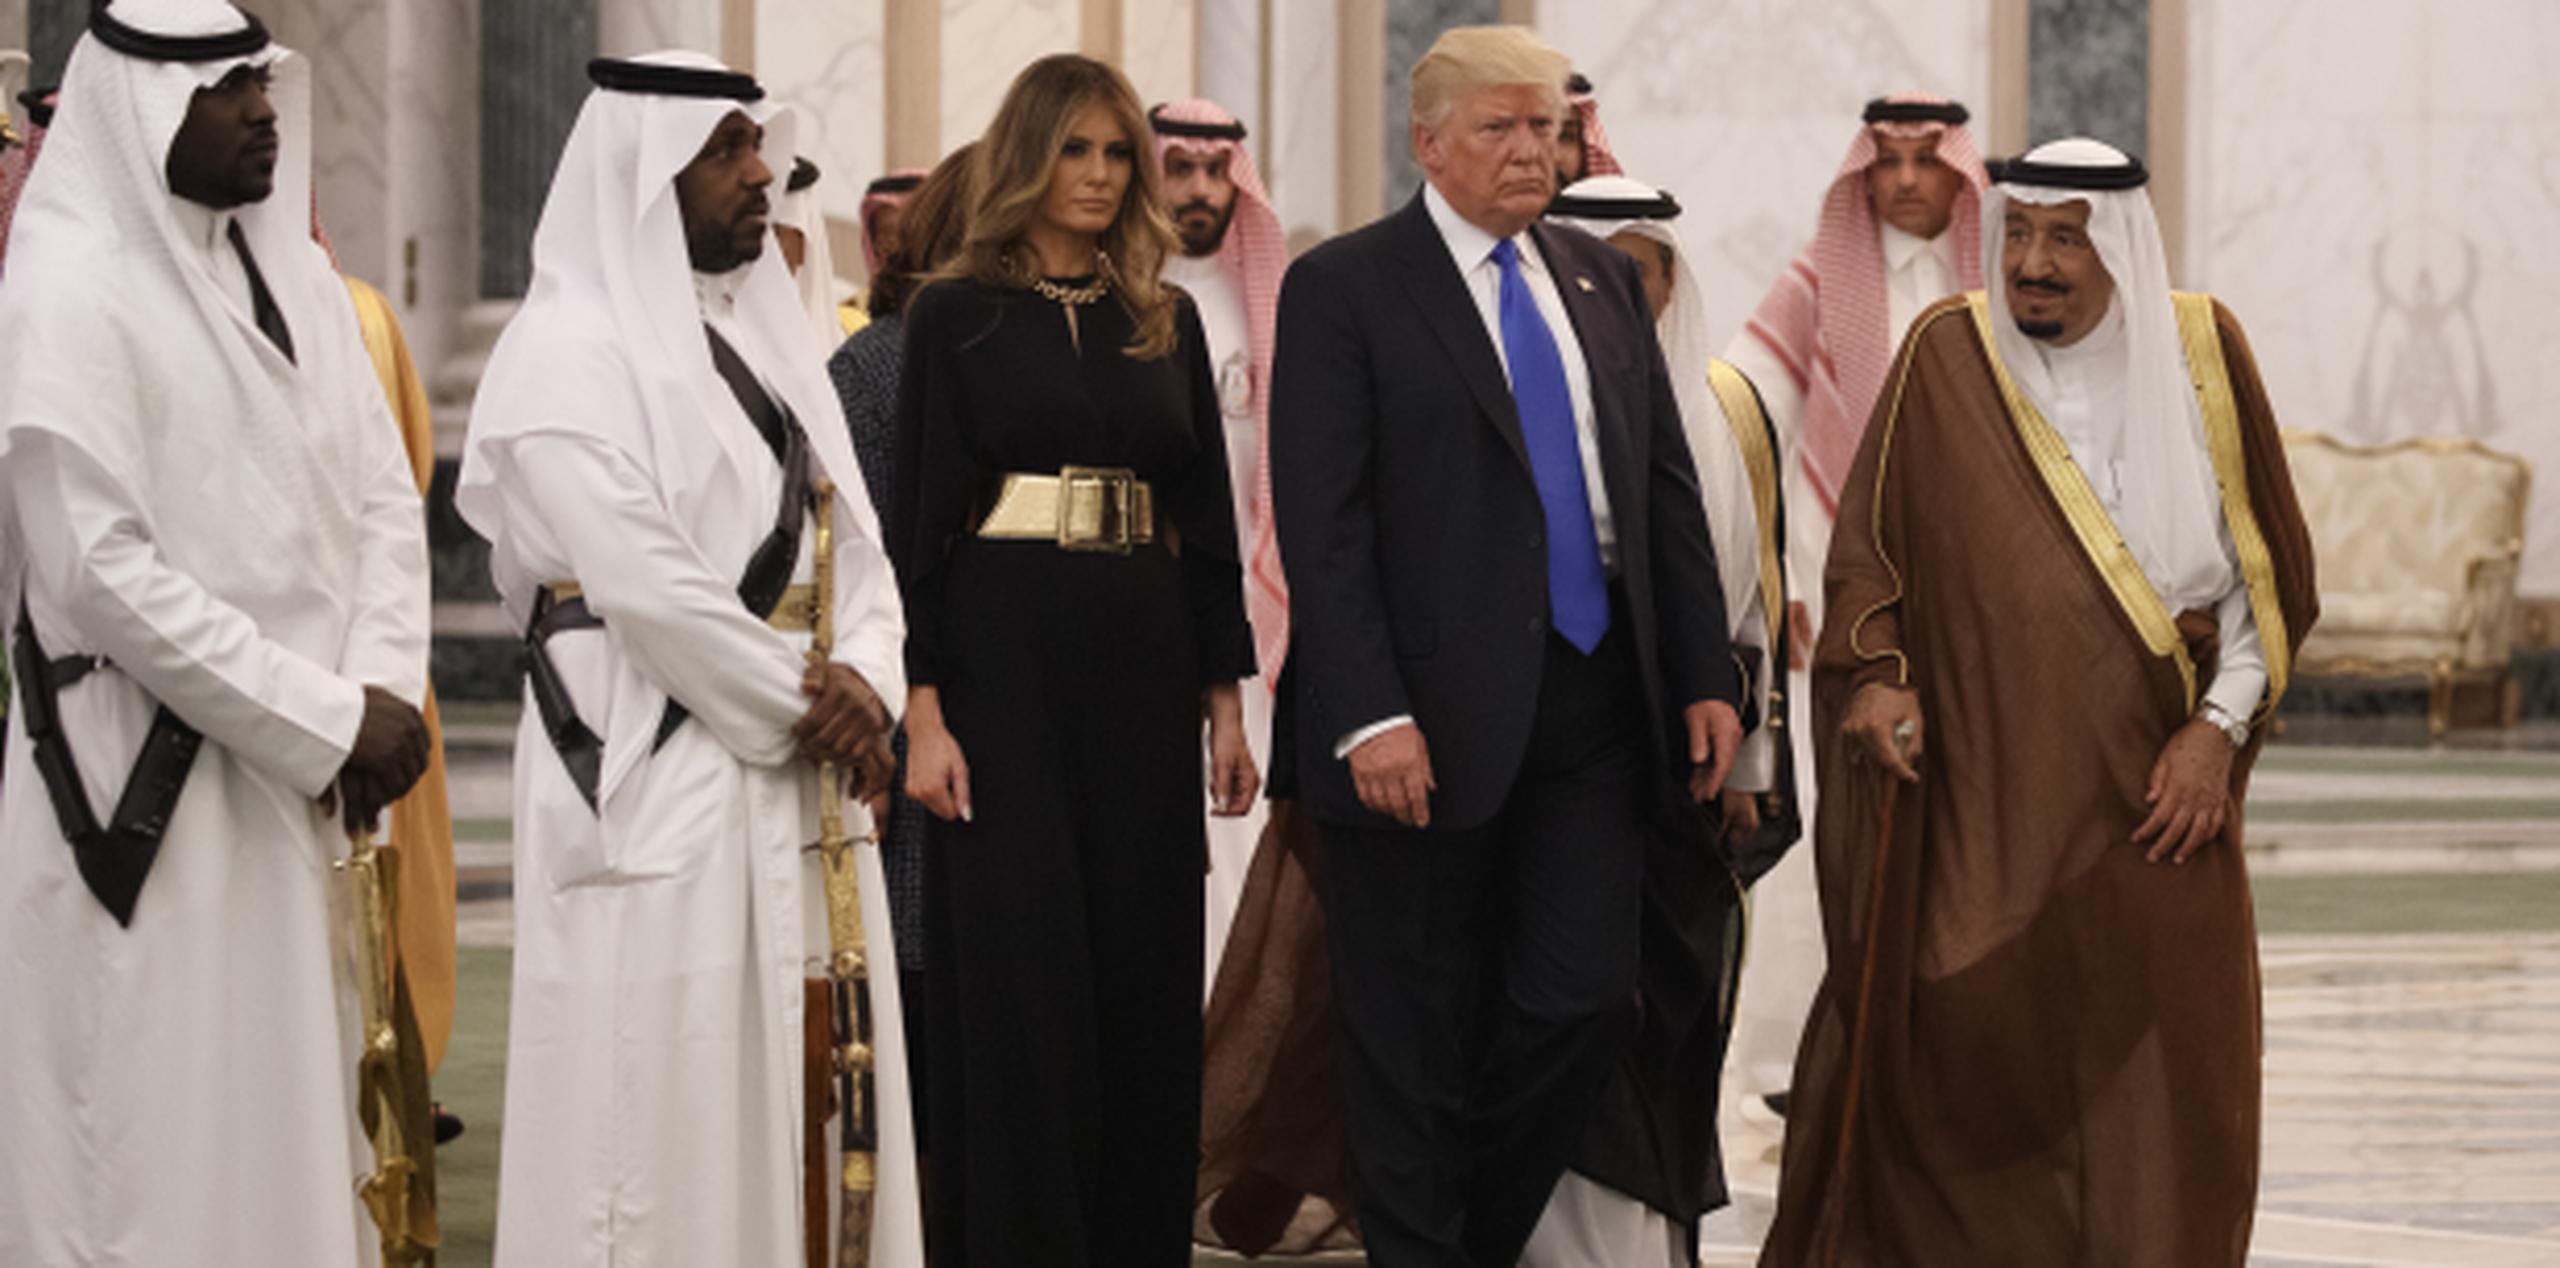 El rey saudí Salman otorgo al presidente Donald Trump la medalla de Abdulaziz al Saud, el honor civil más alto que otorga Arabia Saudi.(AP/Evan Vucci)
